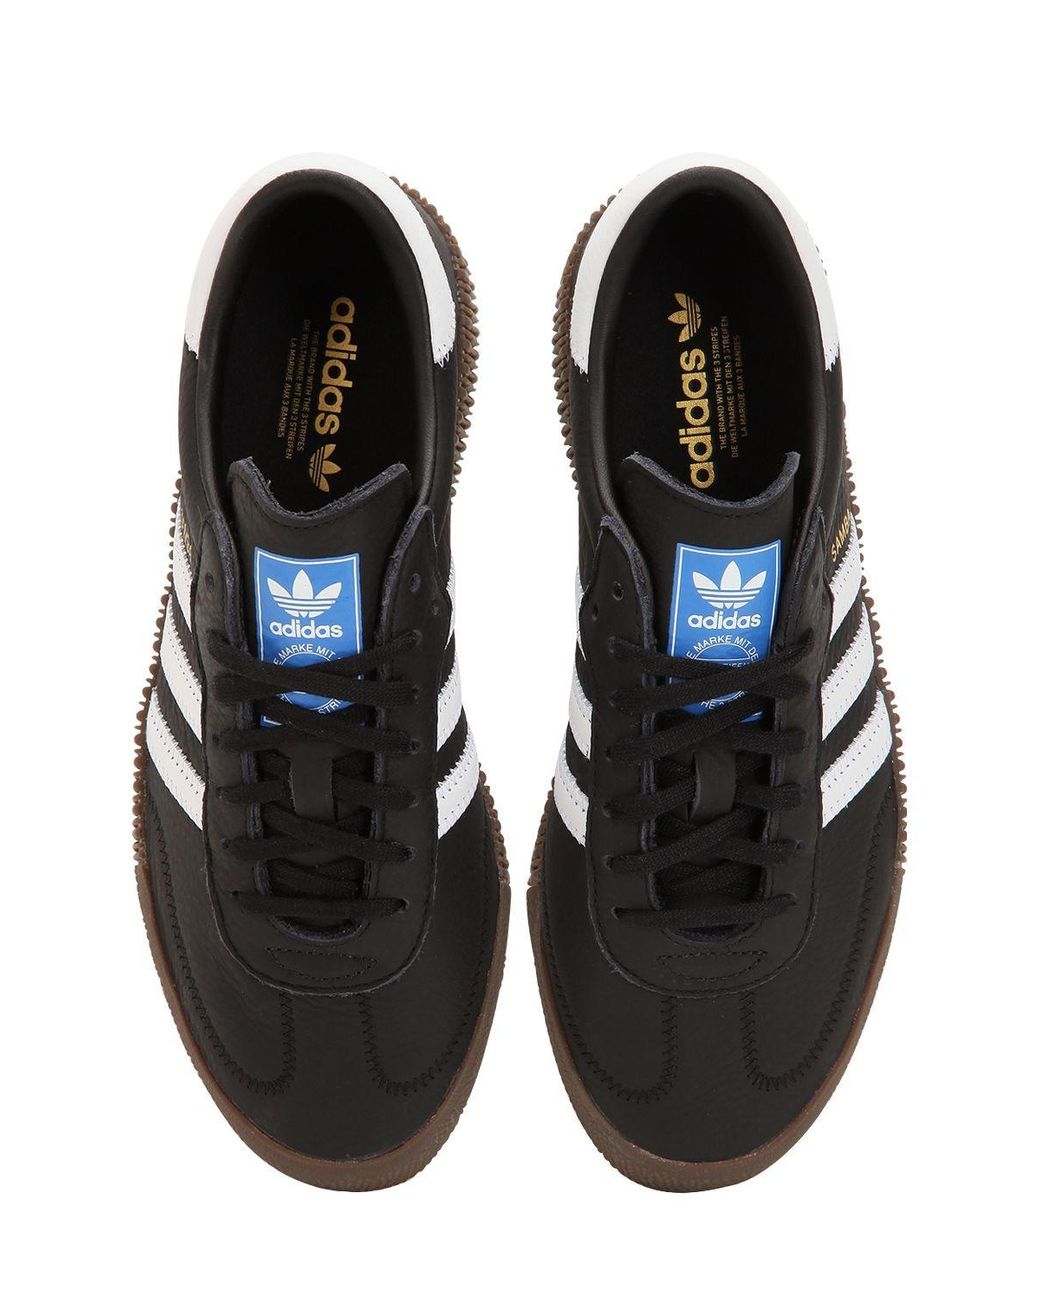 Faringe Opresor Microordenador Sneakers "Samba" Con Plataforma adidas Originals de color Negro | Lyst